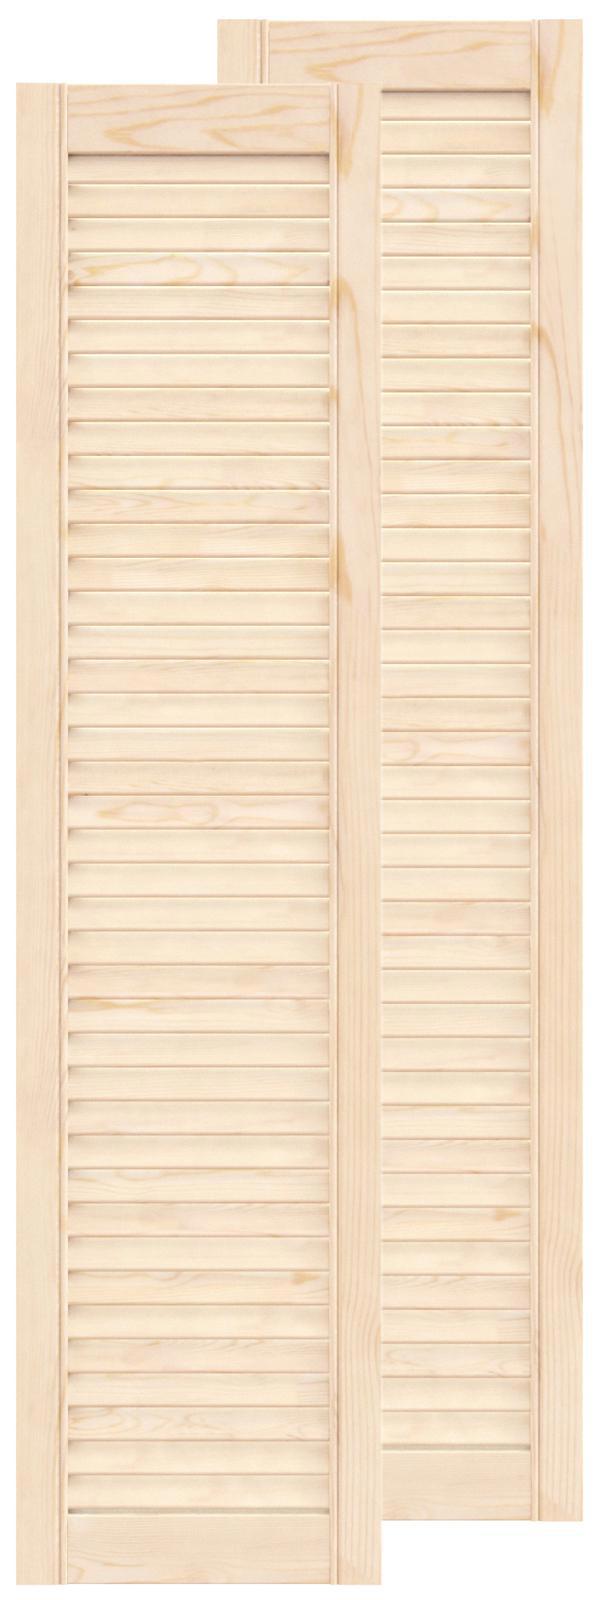 Двери жалюзийные деревянные Timber&Style 1205х294х20мм сосна Экстра .